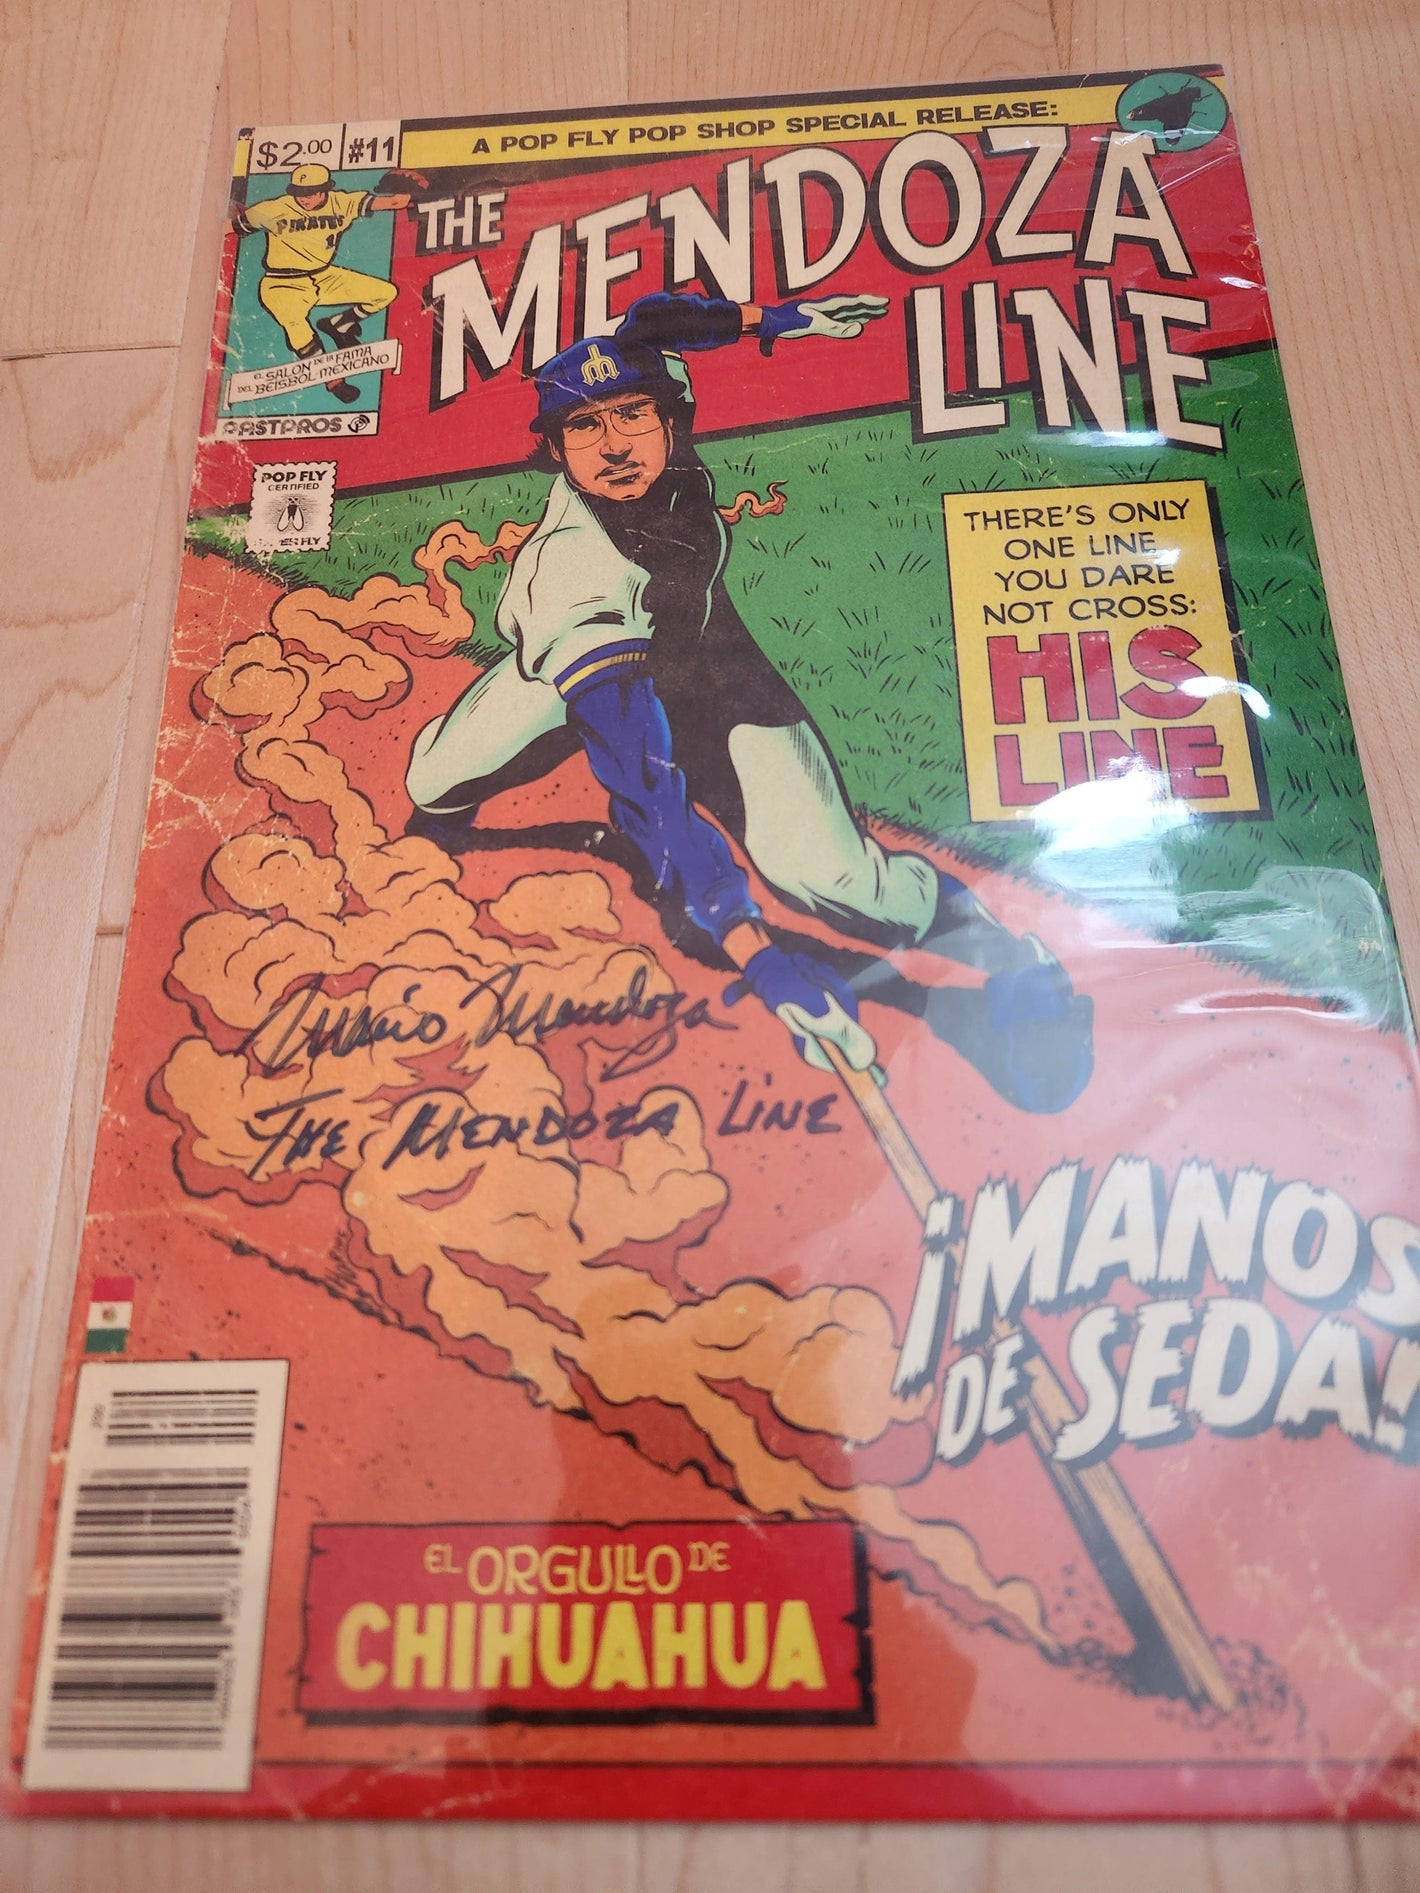 Mario Mendoza "The Mendoza Line" Pop Fly Pop Shop Print #108 – Signed by Mario Mendoza & Daniel Jacob Horine w/Inscription! - PastPros